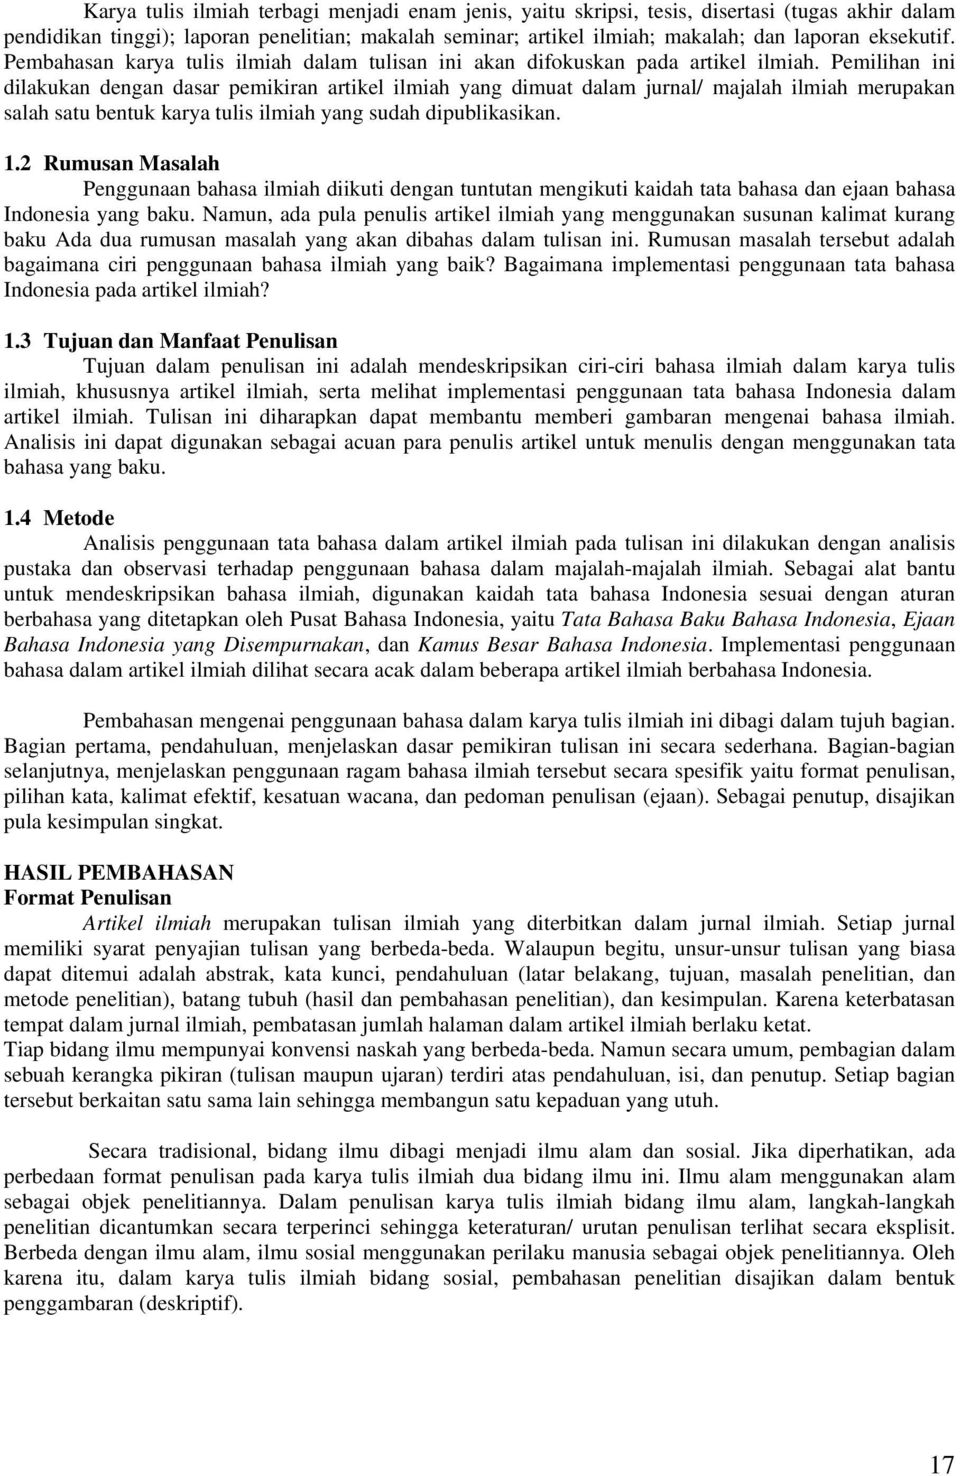 Analisis Penggunaan Tata Bahasa Indonesia Dalam Penulisan Karya Tulis Ilmiah Studi Kasus Artikel Ilmiah Retno Asihanti Setiorini Abstrak Pdf Free Download